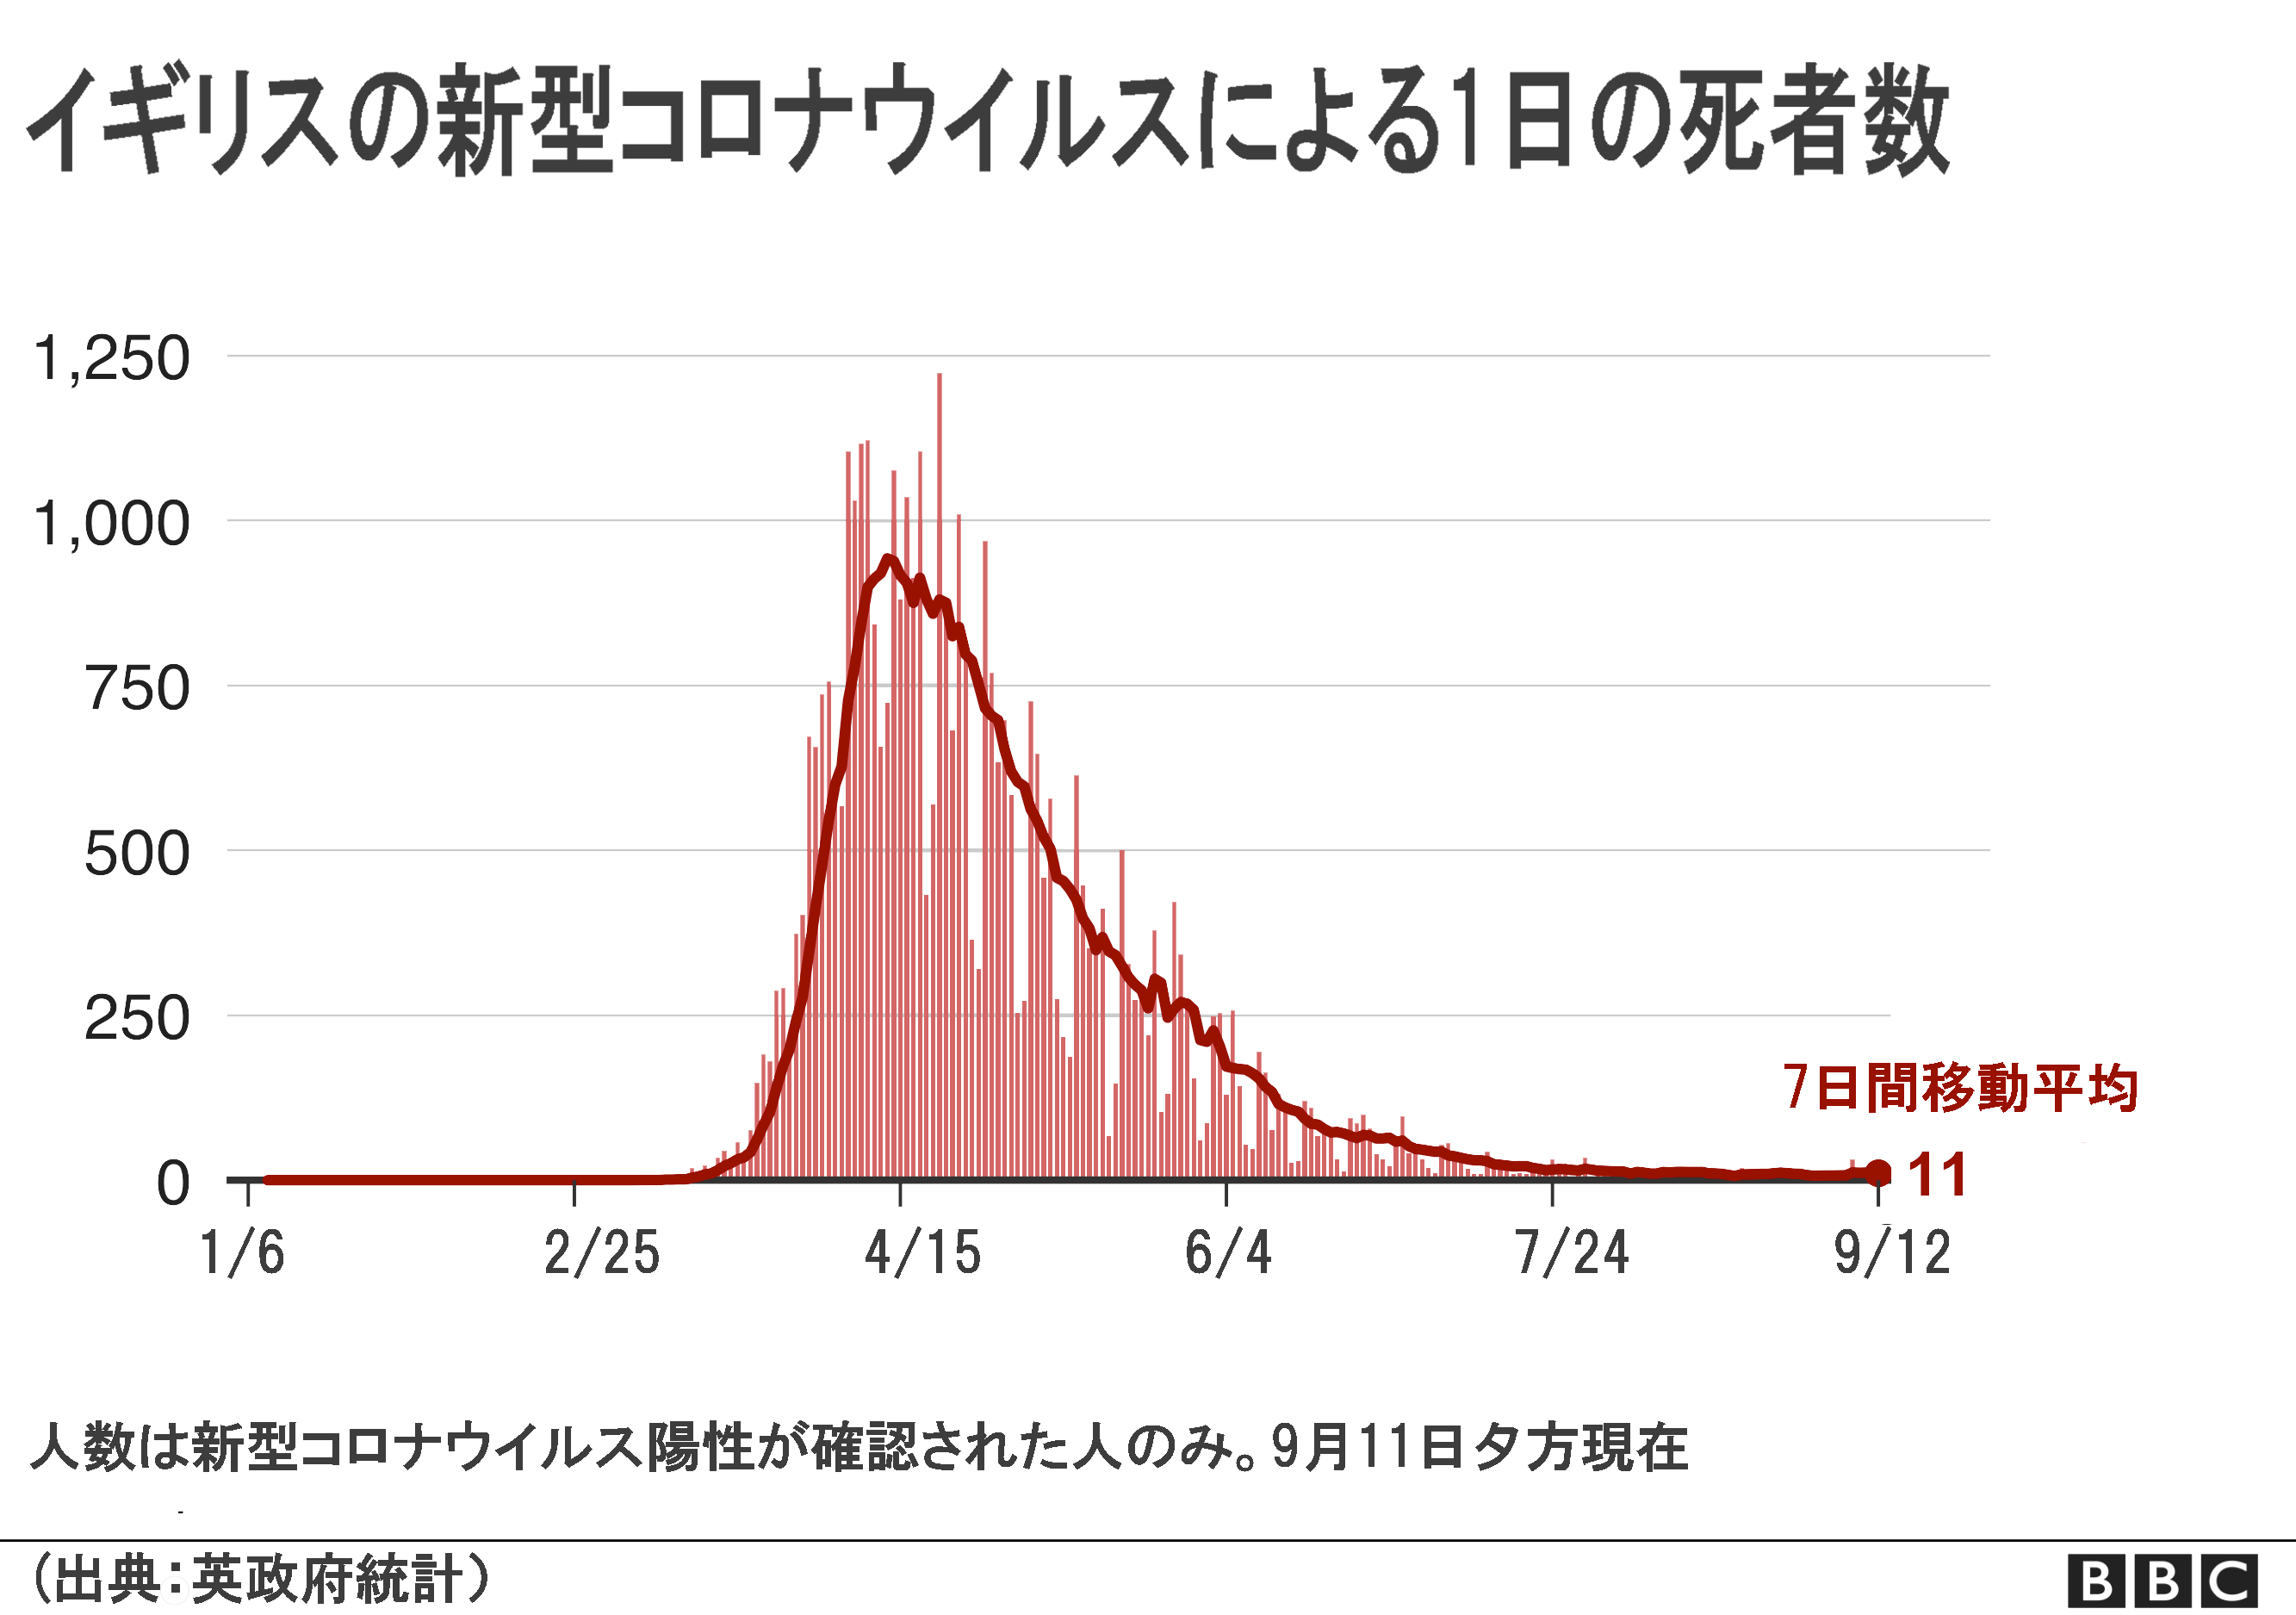 死者 年齢 別 コロナ 新型コロナウイルス死亡者の年齢分布～コロナ死亡者の平均年齢は東京都79.3歳、鹿児島87.2歳、日本人の平均寿命は男81.25年、女87.32年～